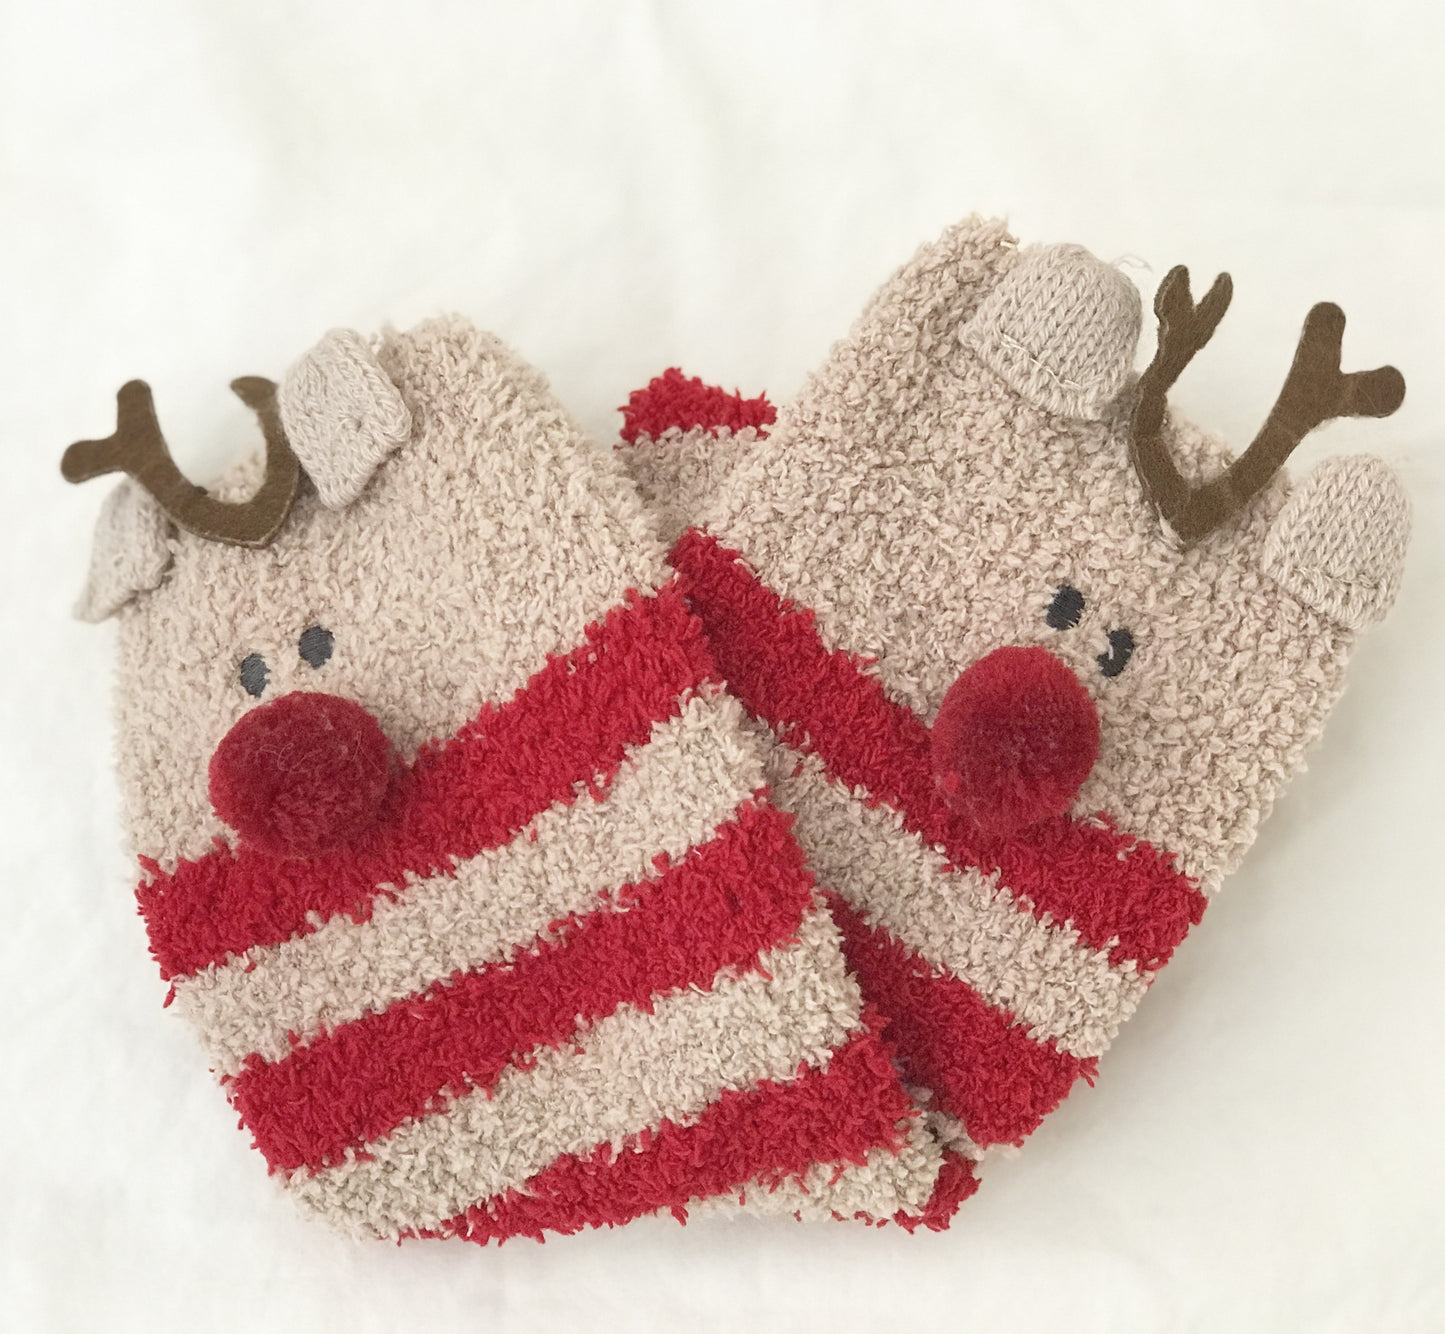 Reindeer Christmas Socks in a Box